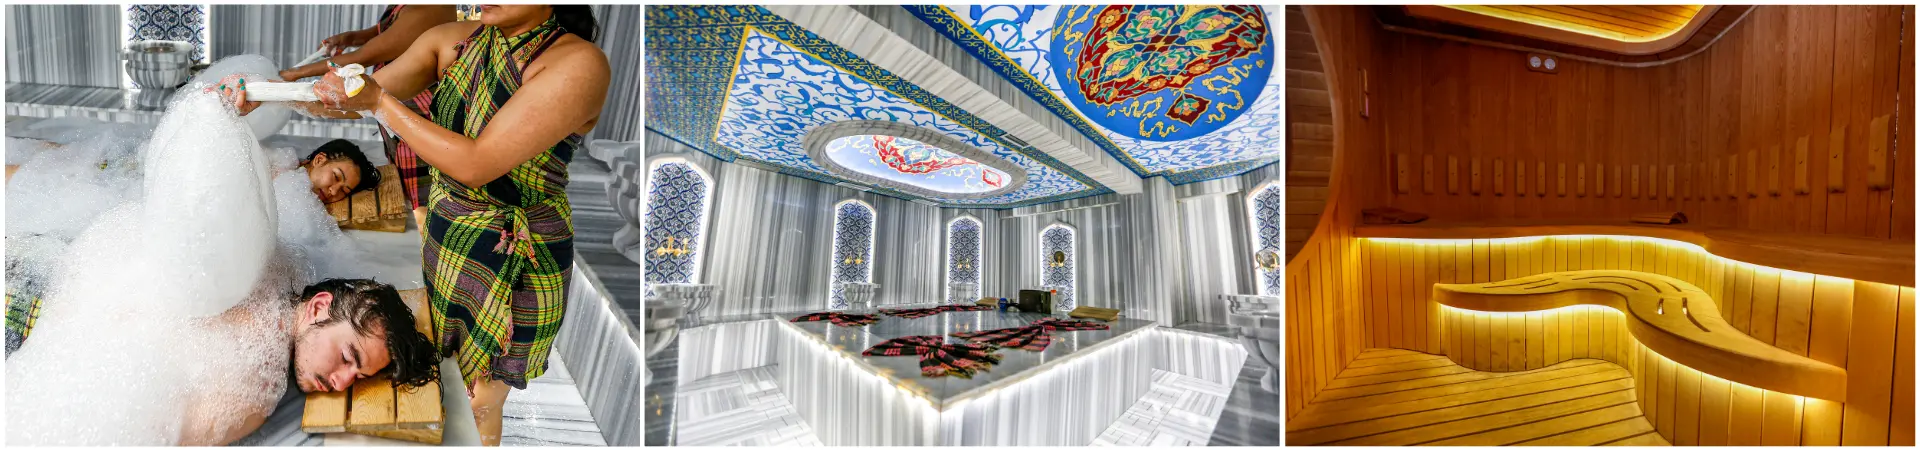 حمام السلطان سليمان التركي